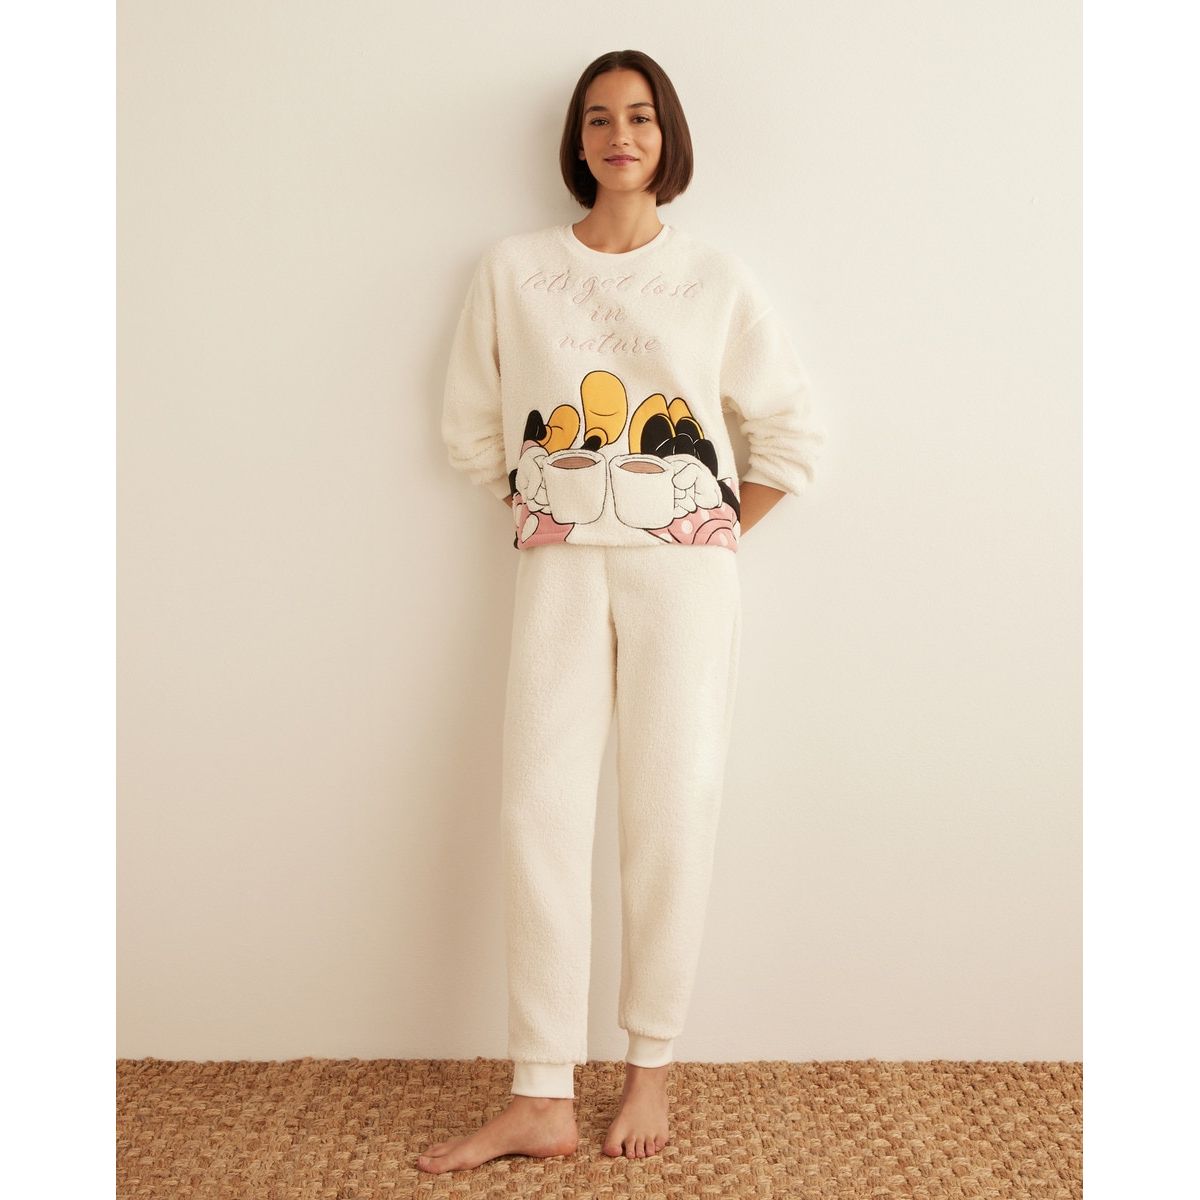 La Redoute Vêtements Sous-vêtements vêtements de nuit Pyjamas Pyjama Minnie avec fleurs 